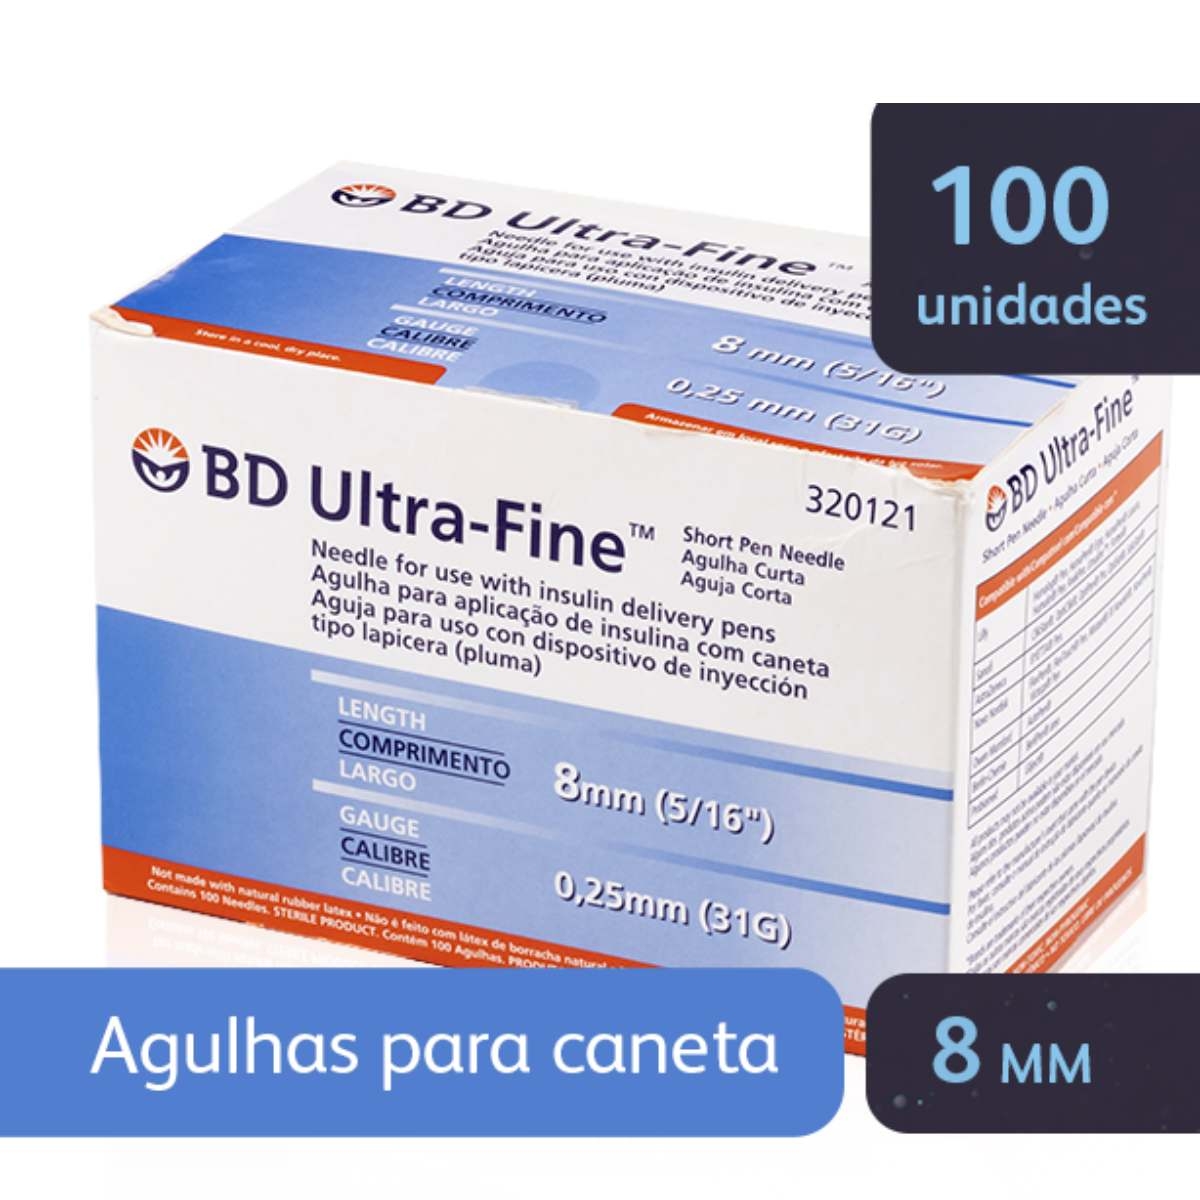 Novofine Agulha de Insulina Novofine 32G 6Mm , 100 unidades